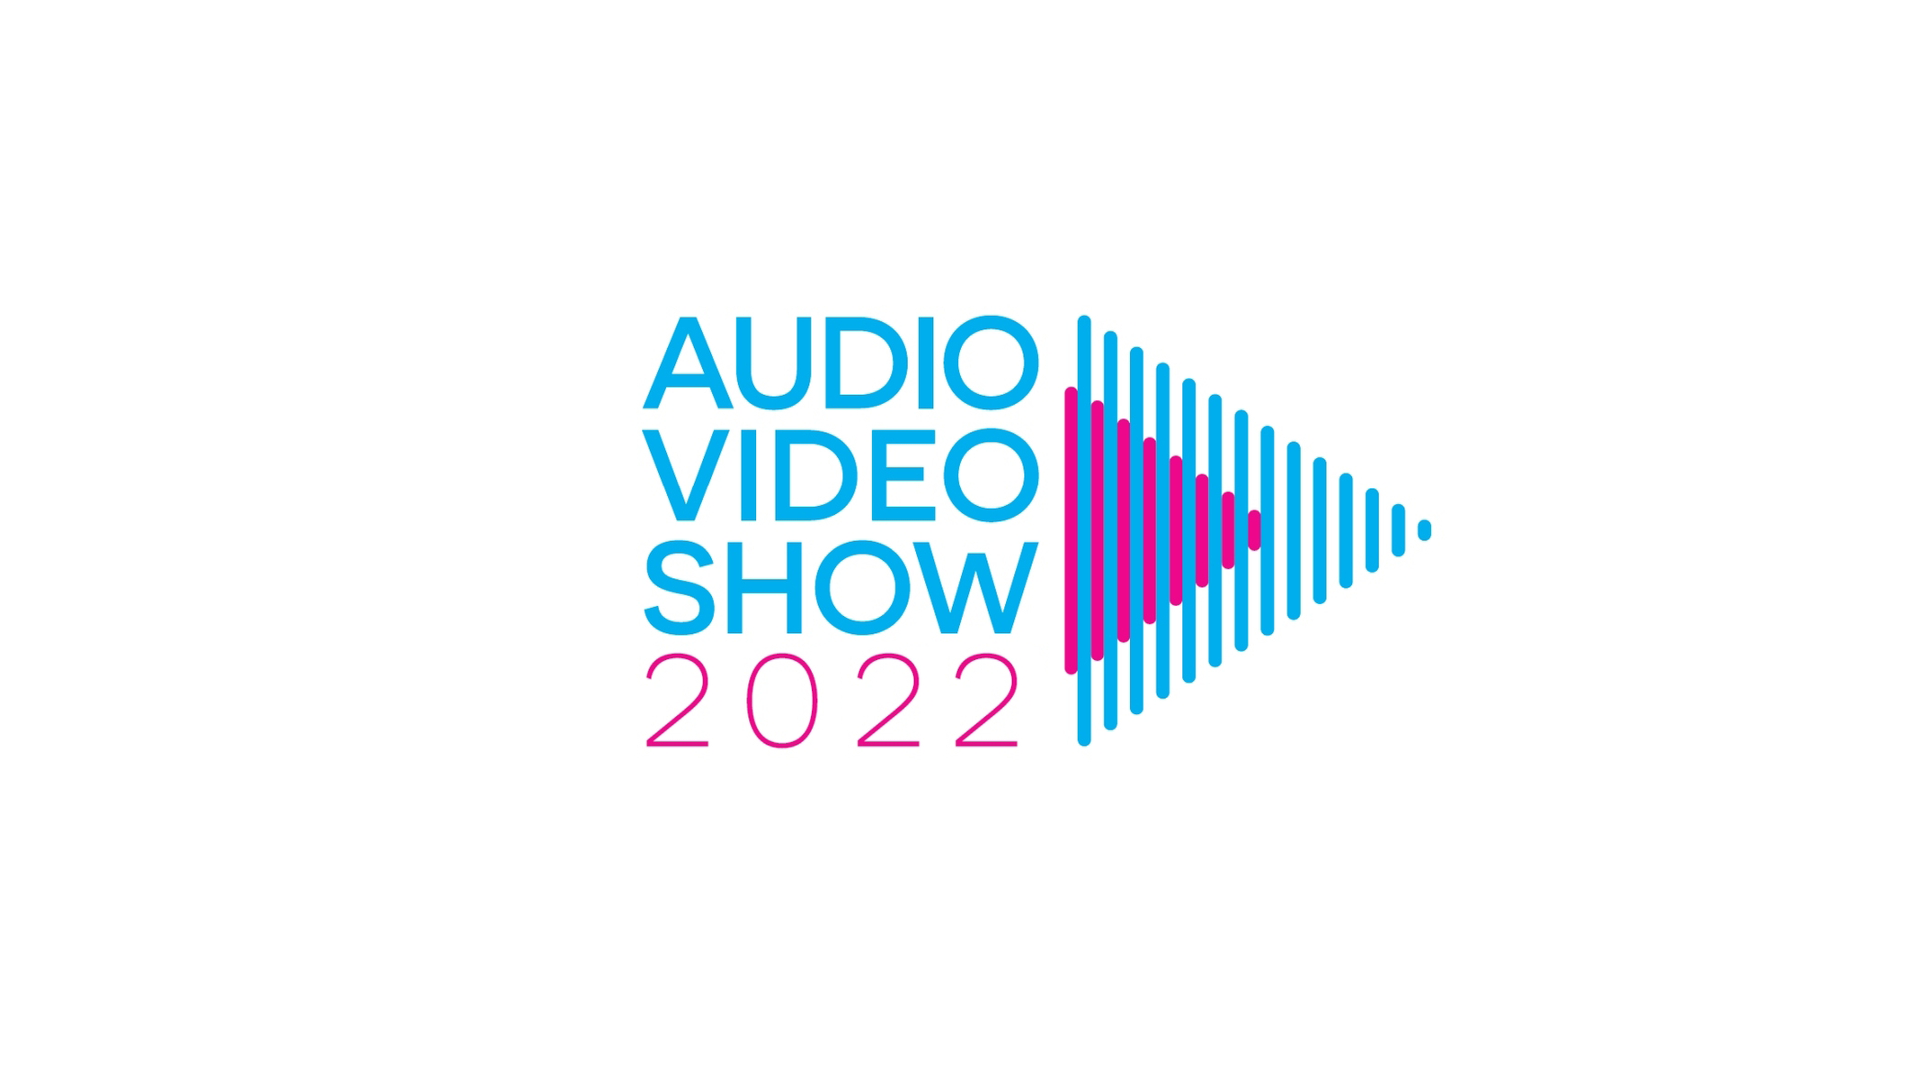  Audio Video Show 2022